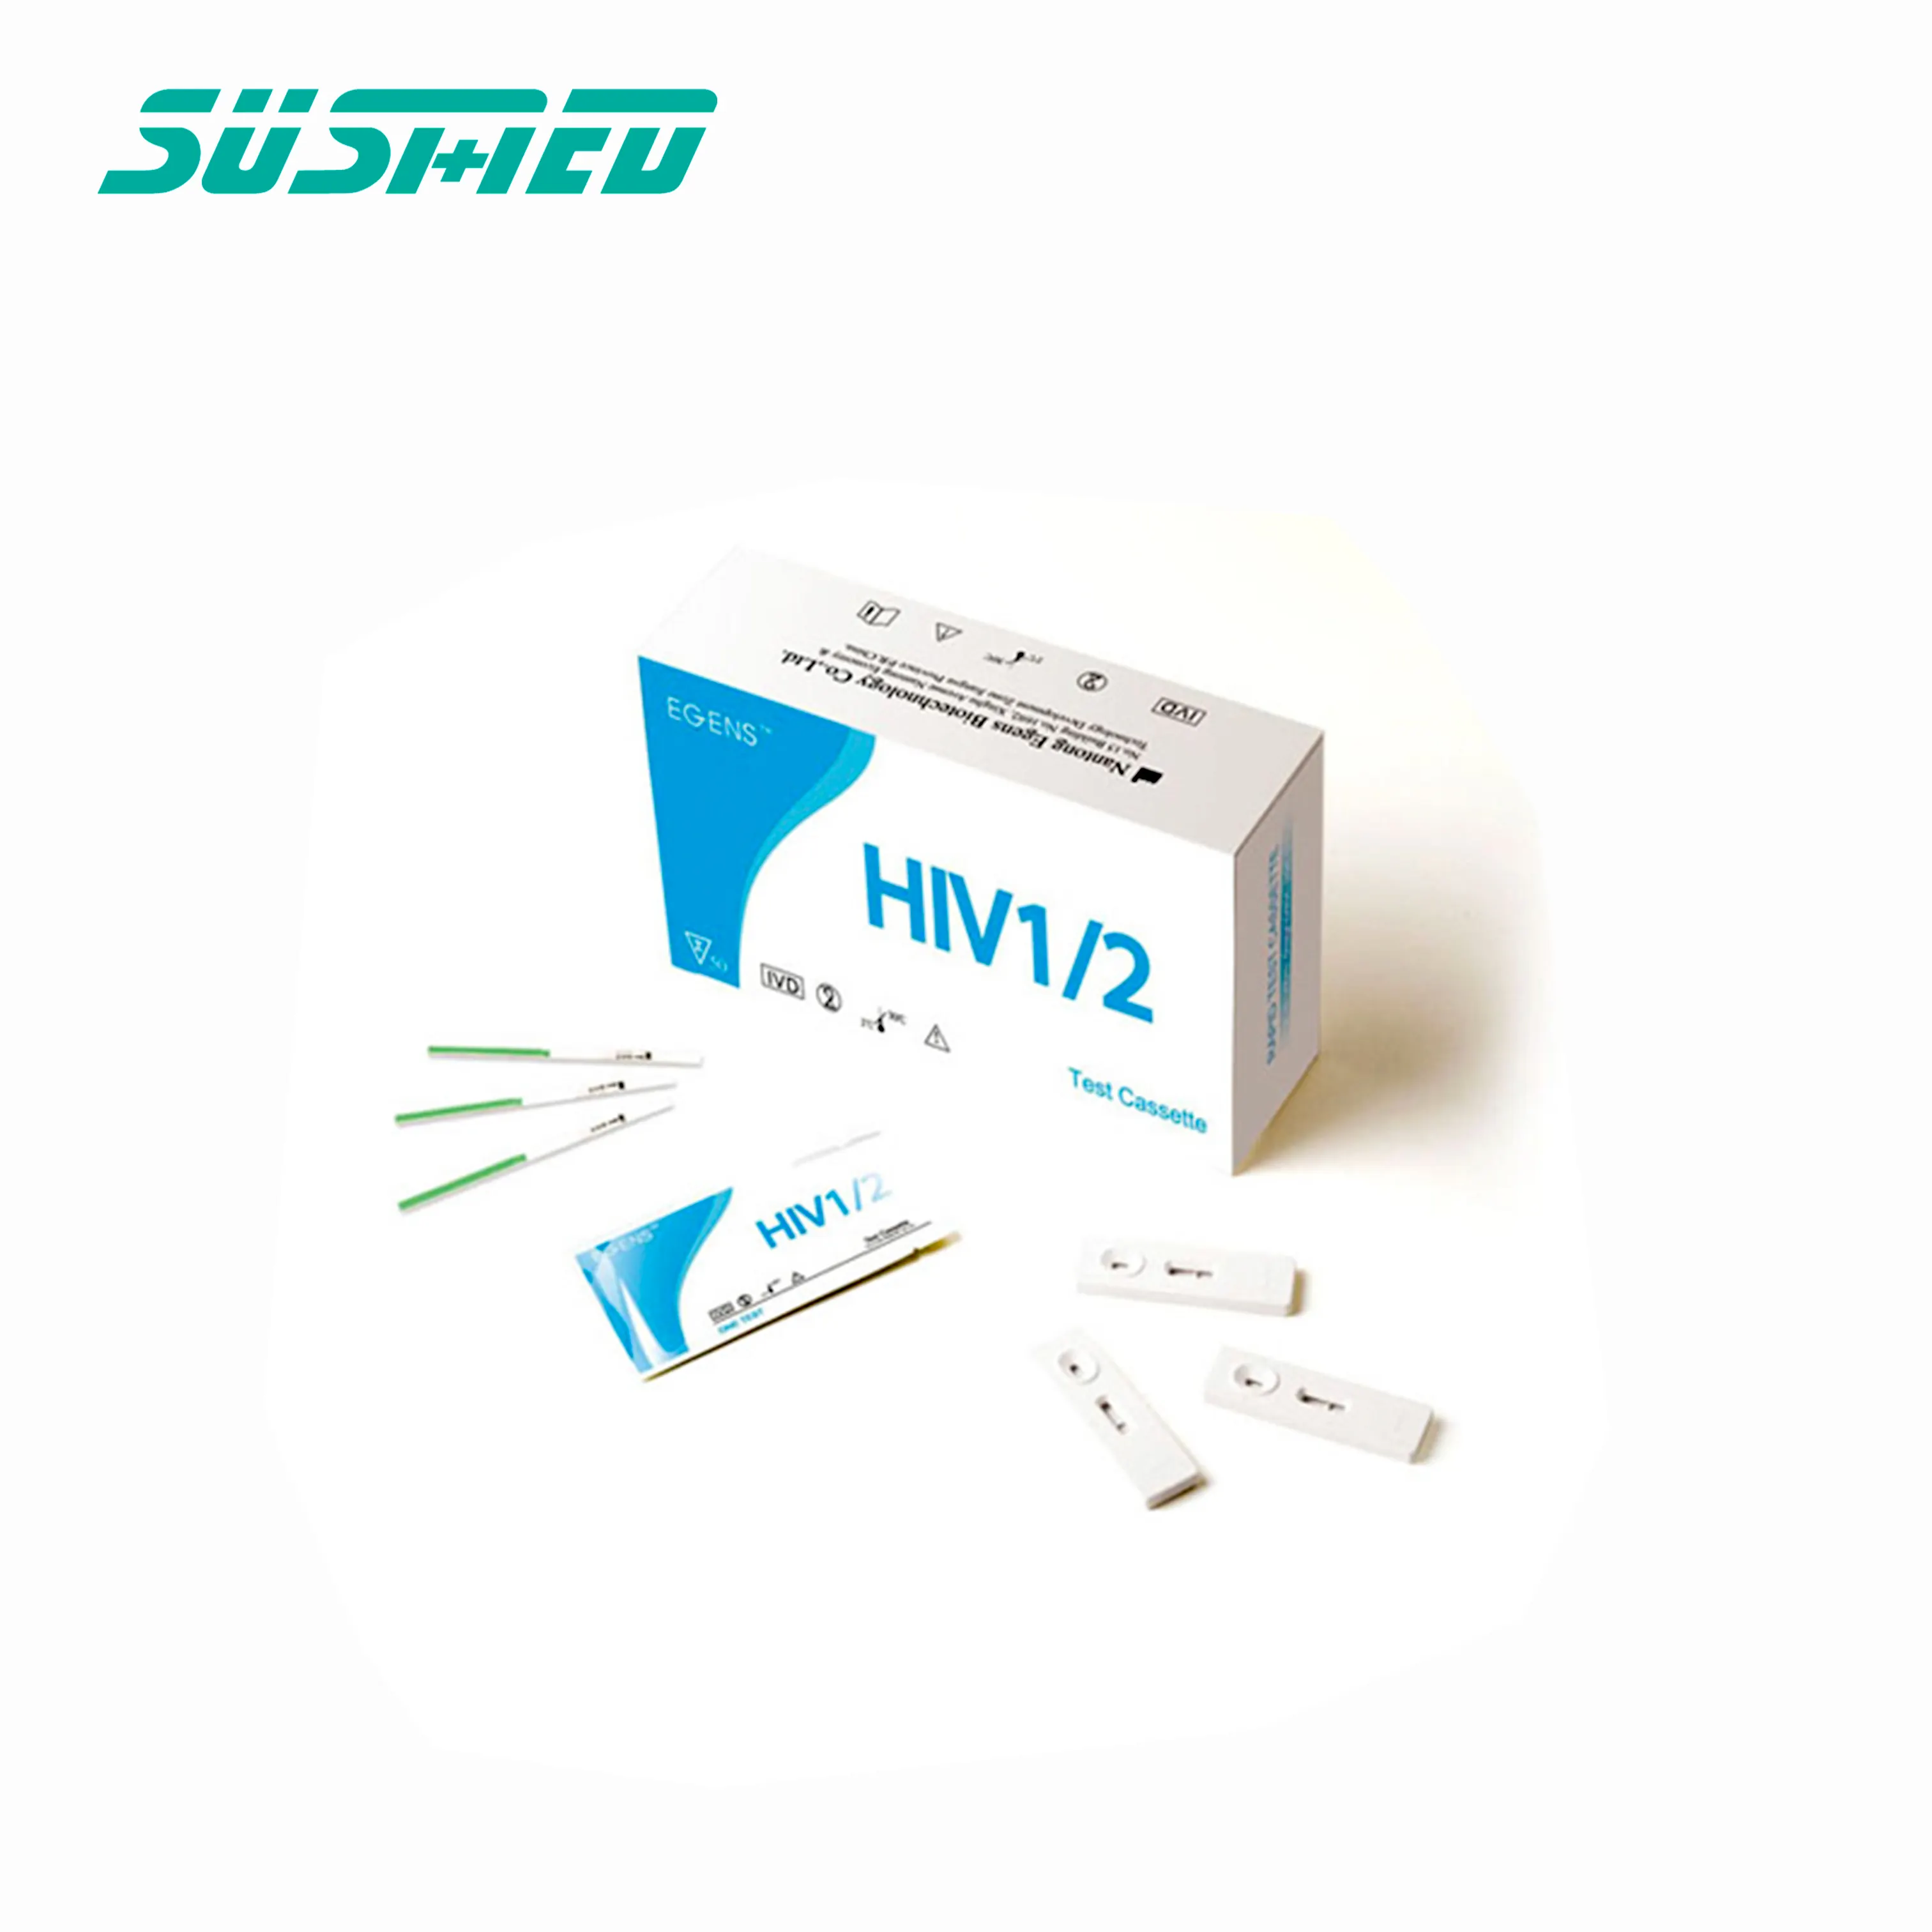 HIV 1+2 blood rapid test strip kit